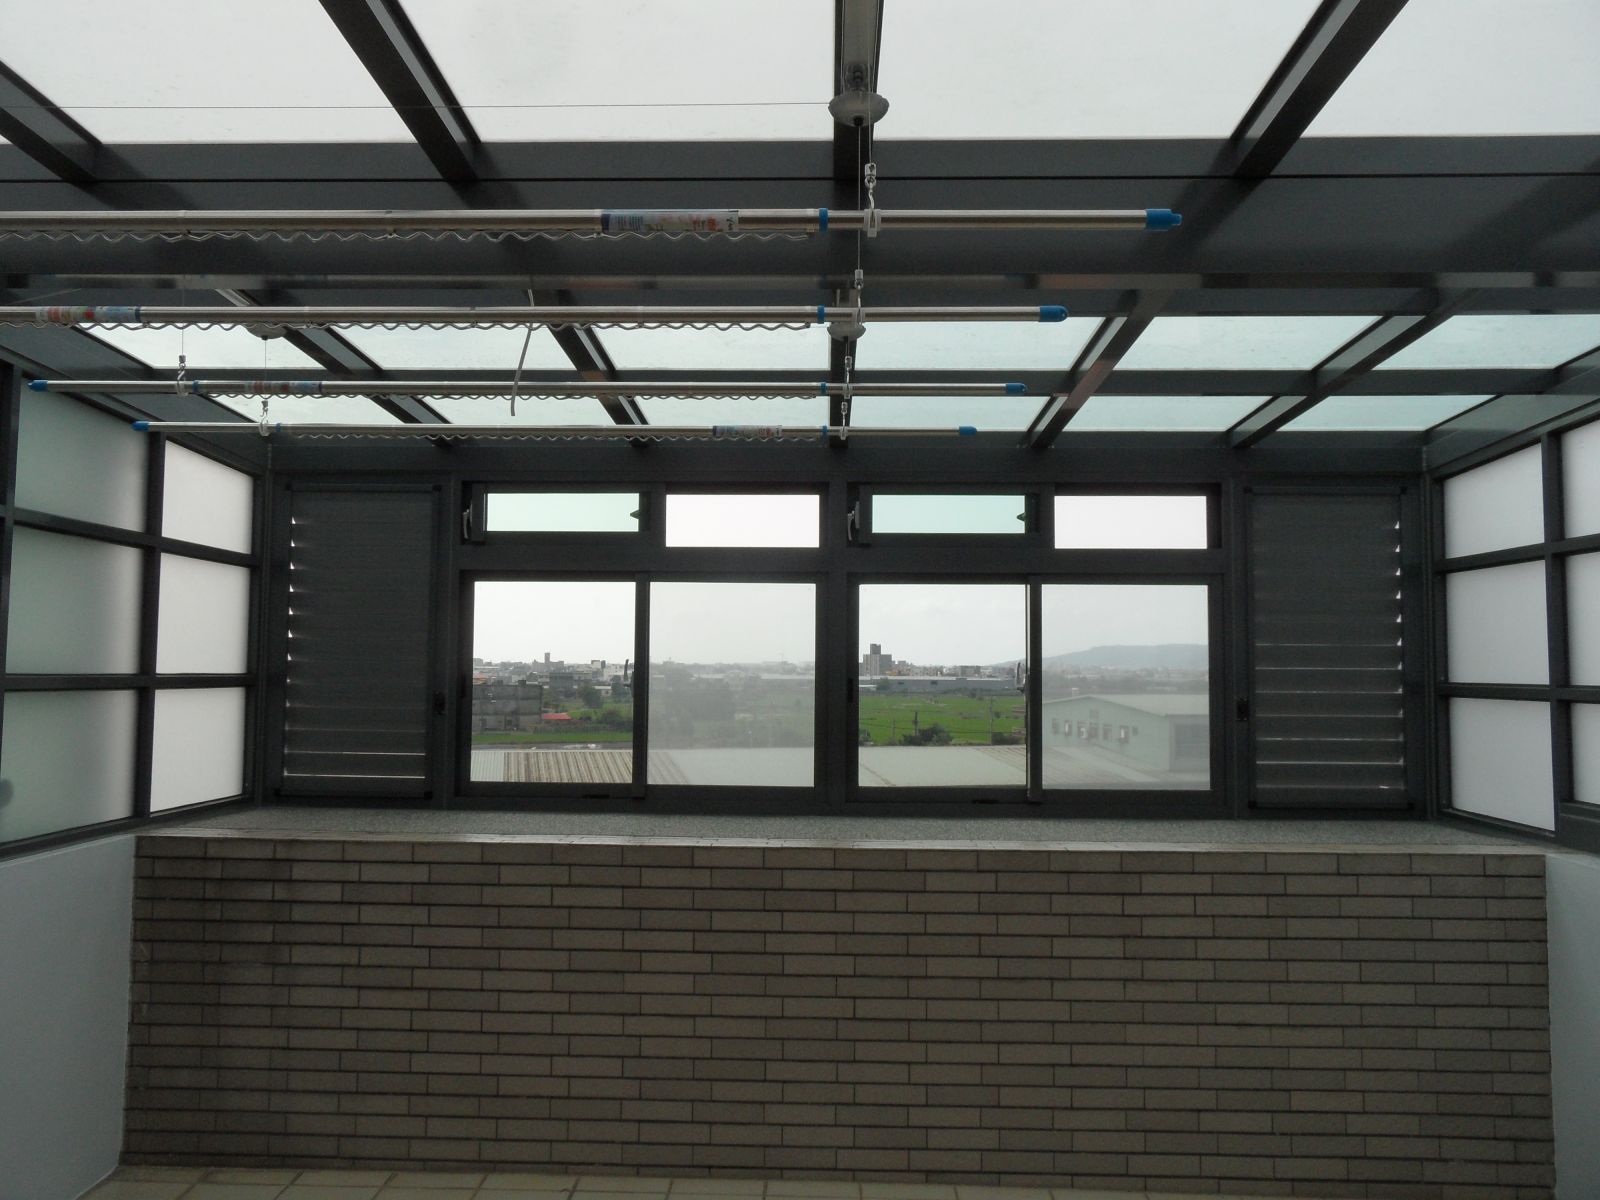 正面高級氣密窗(5mm綠色強化玻璃)搭配2組活動百葉窗(內附紗窗)